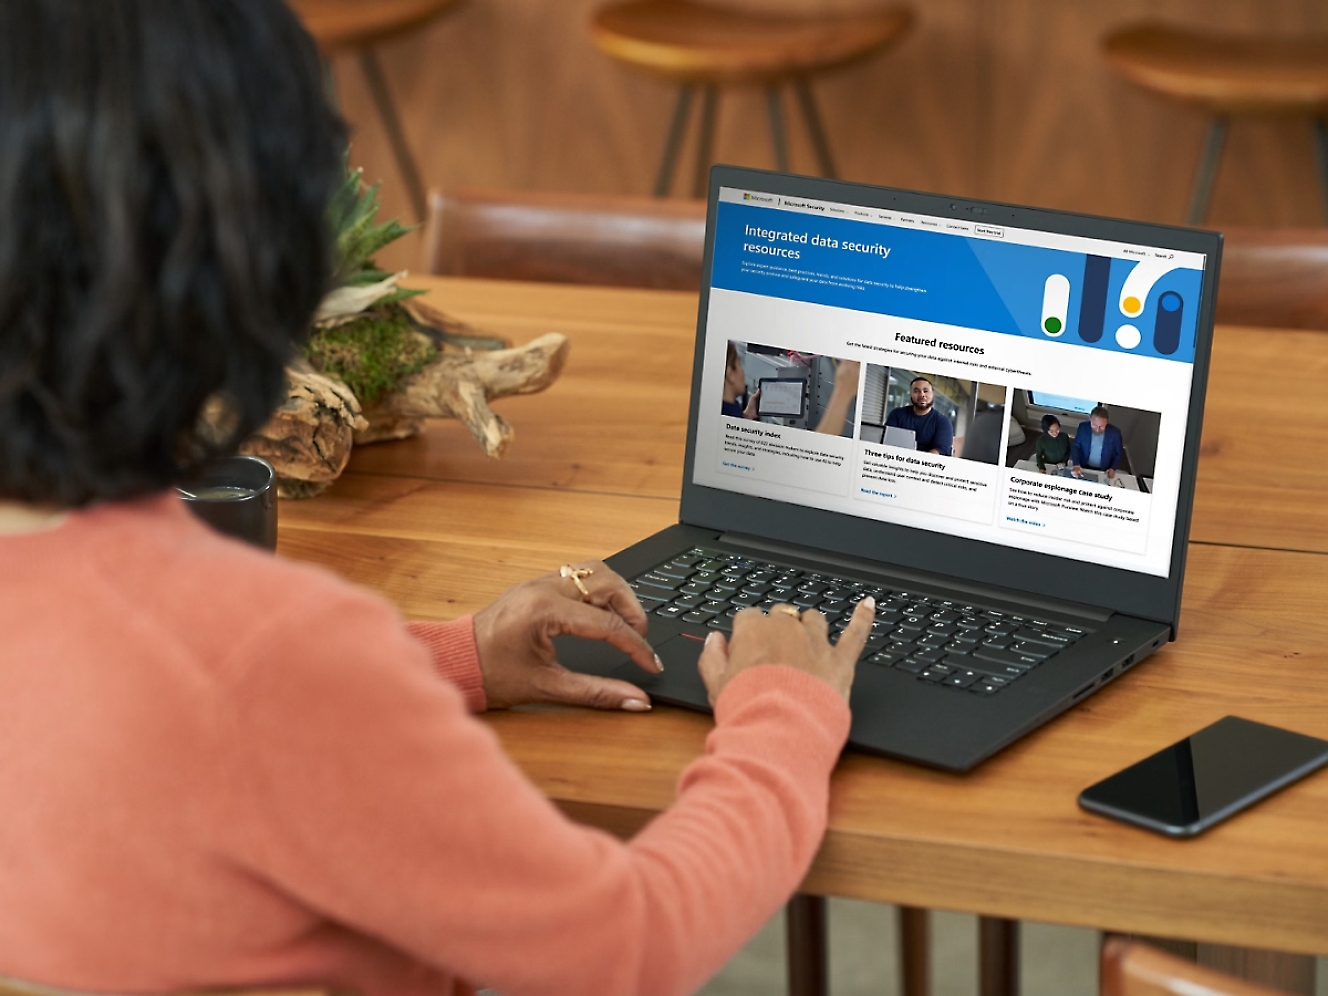 Mulher de camisola laranja a utilizar um portátil a mostrar um site sobre segurança de dados no ecrã numa mesa de madeira